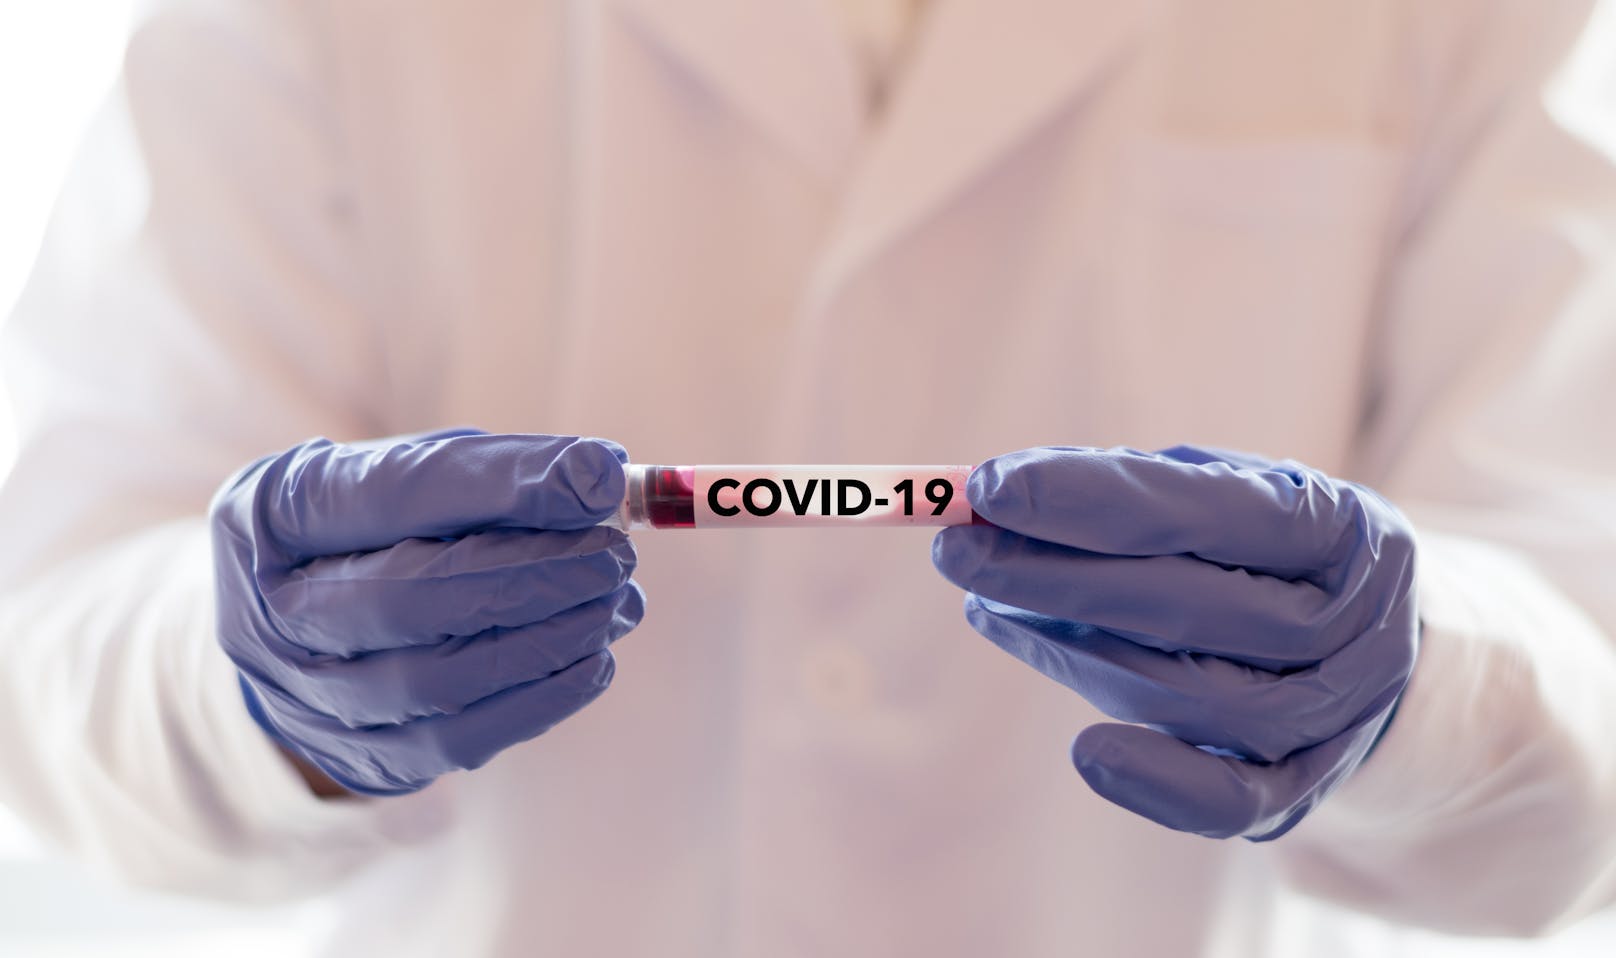 Nicht alle Patienten, die sich mit dem neuartigen Coronavirus Sars-CoV-2 infizieren, landen auf der Intensivstation: Über alle Altersgruppen hinweg haben laut WHO etwa 80 Prozent der nachweislich Betroffenen einen milden bis moderaten Verlauf.